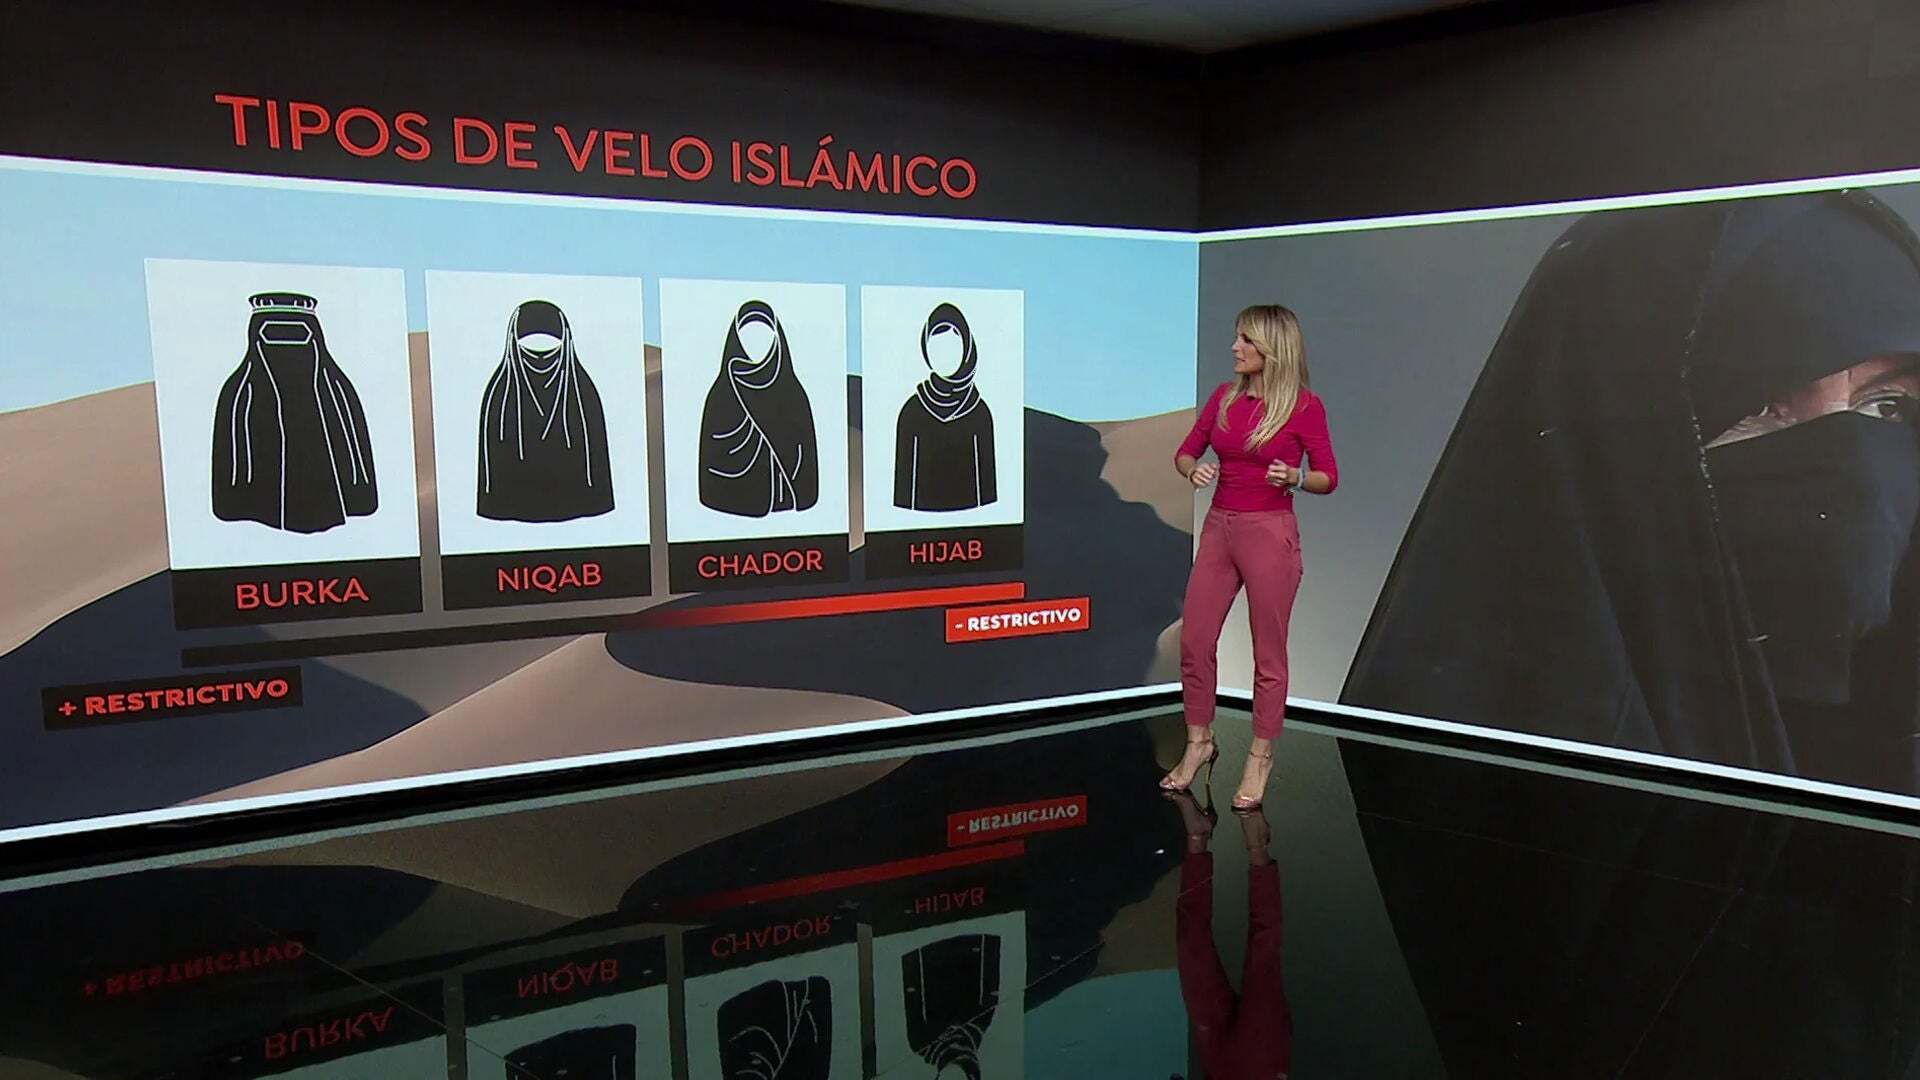 Temporada 1 (07-11-21) Hiyab, niqab, chador y burka: estos son los tipos de velo islámico